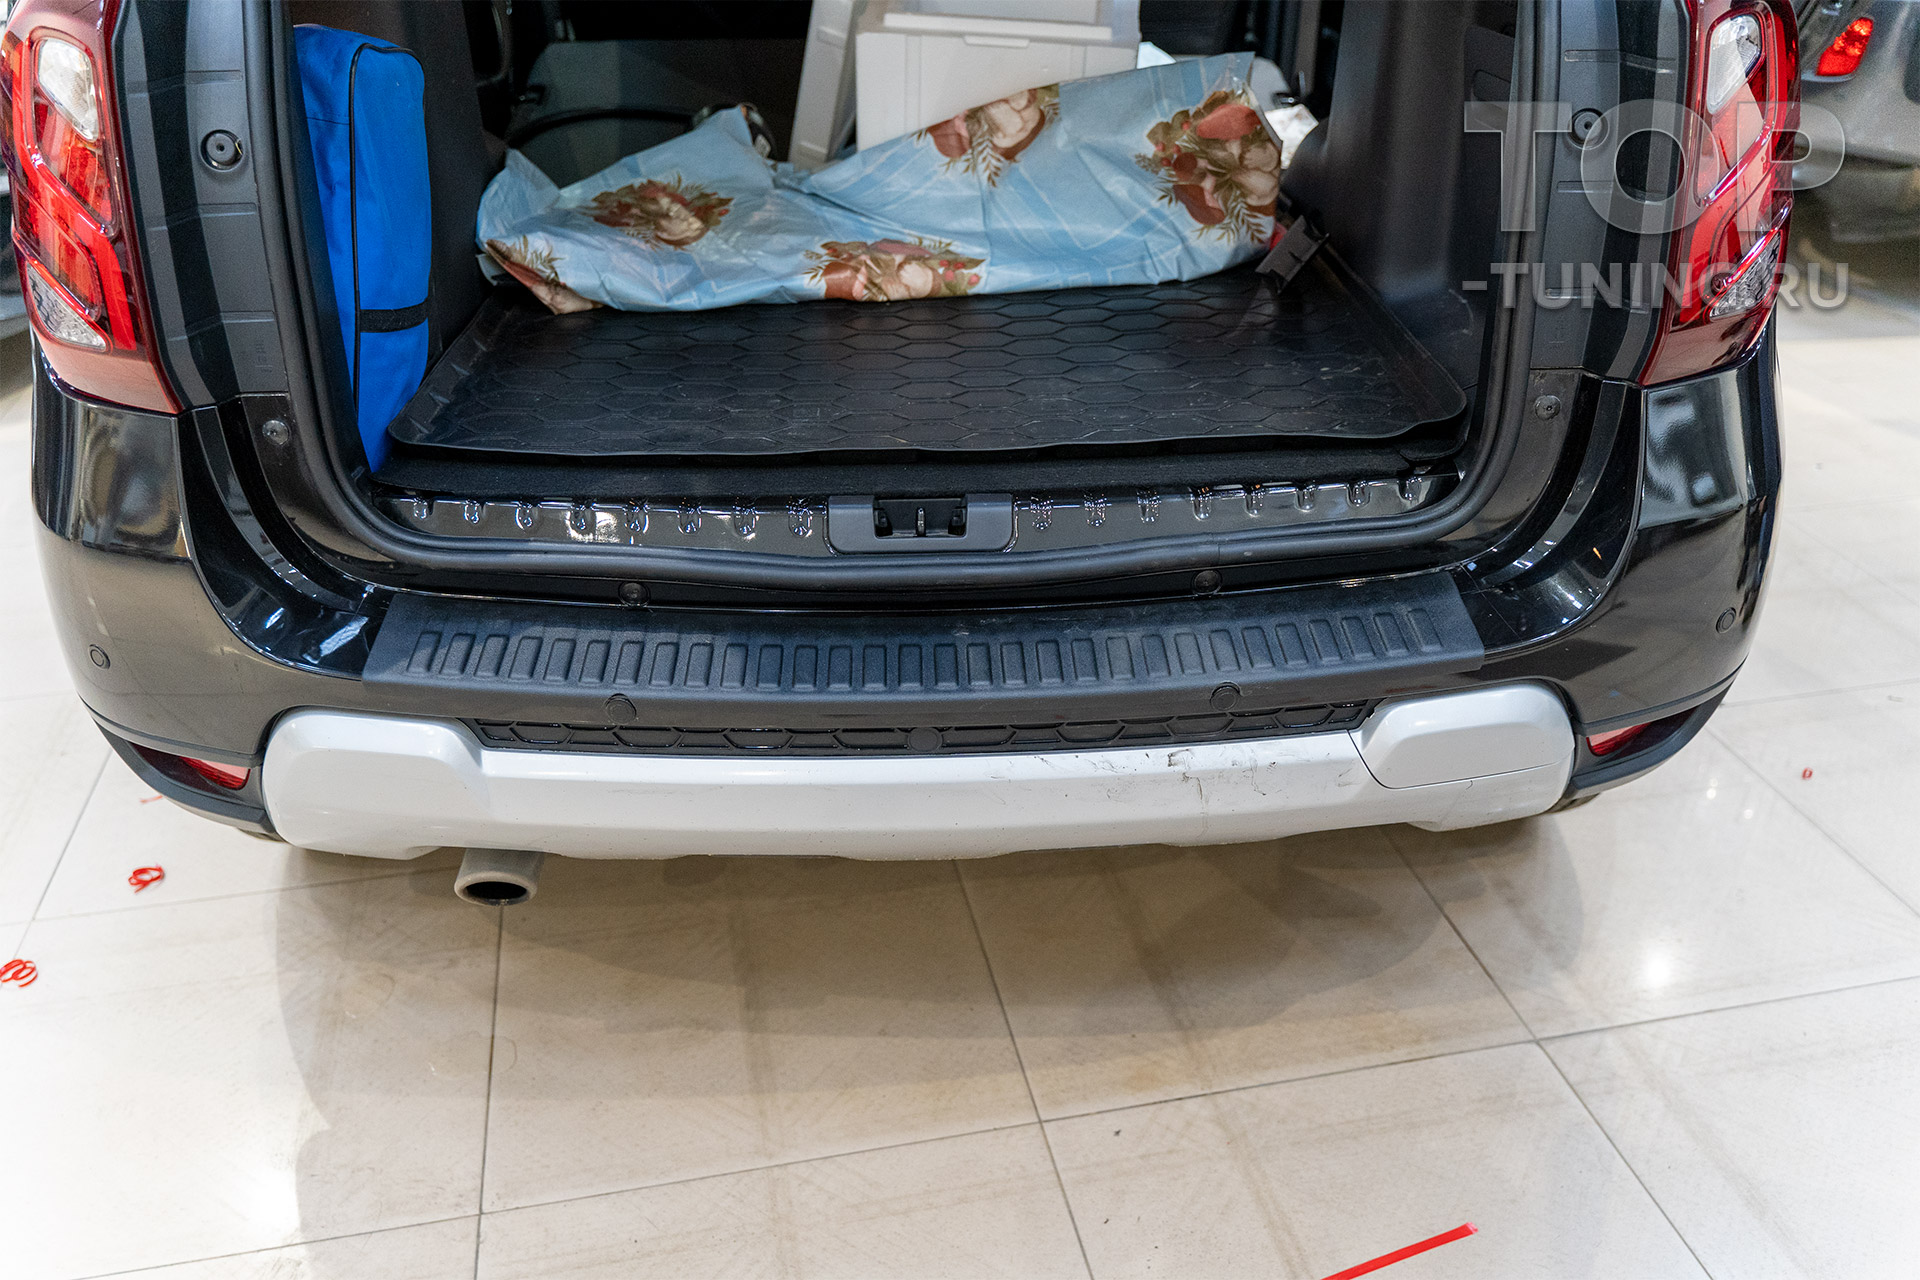 Пластиковые опции для защиты и модернизации салона Дастер 1. Молдинги в багажник, протекторы на бампер и пороги